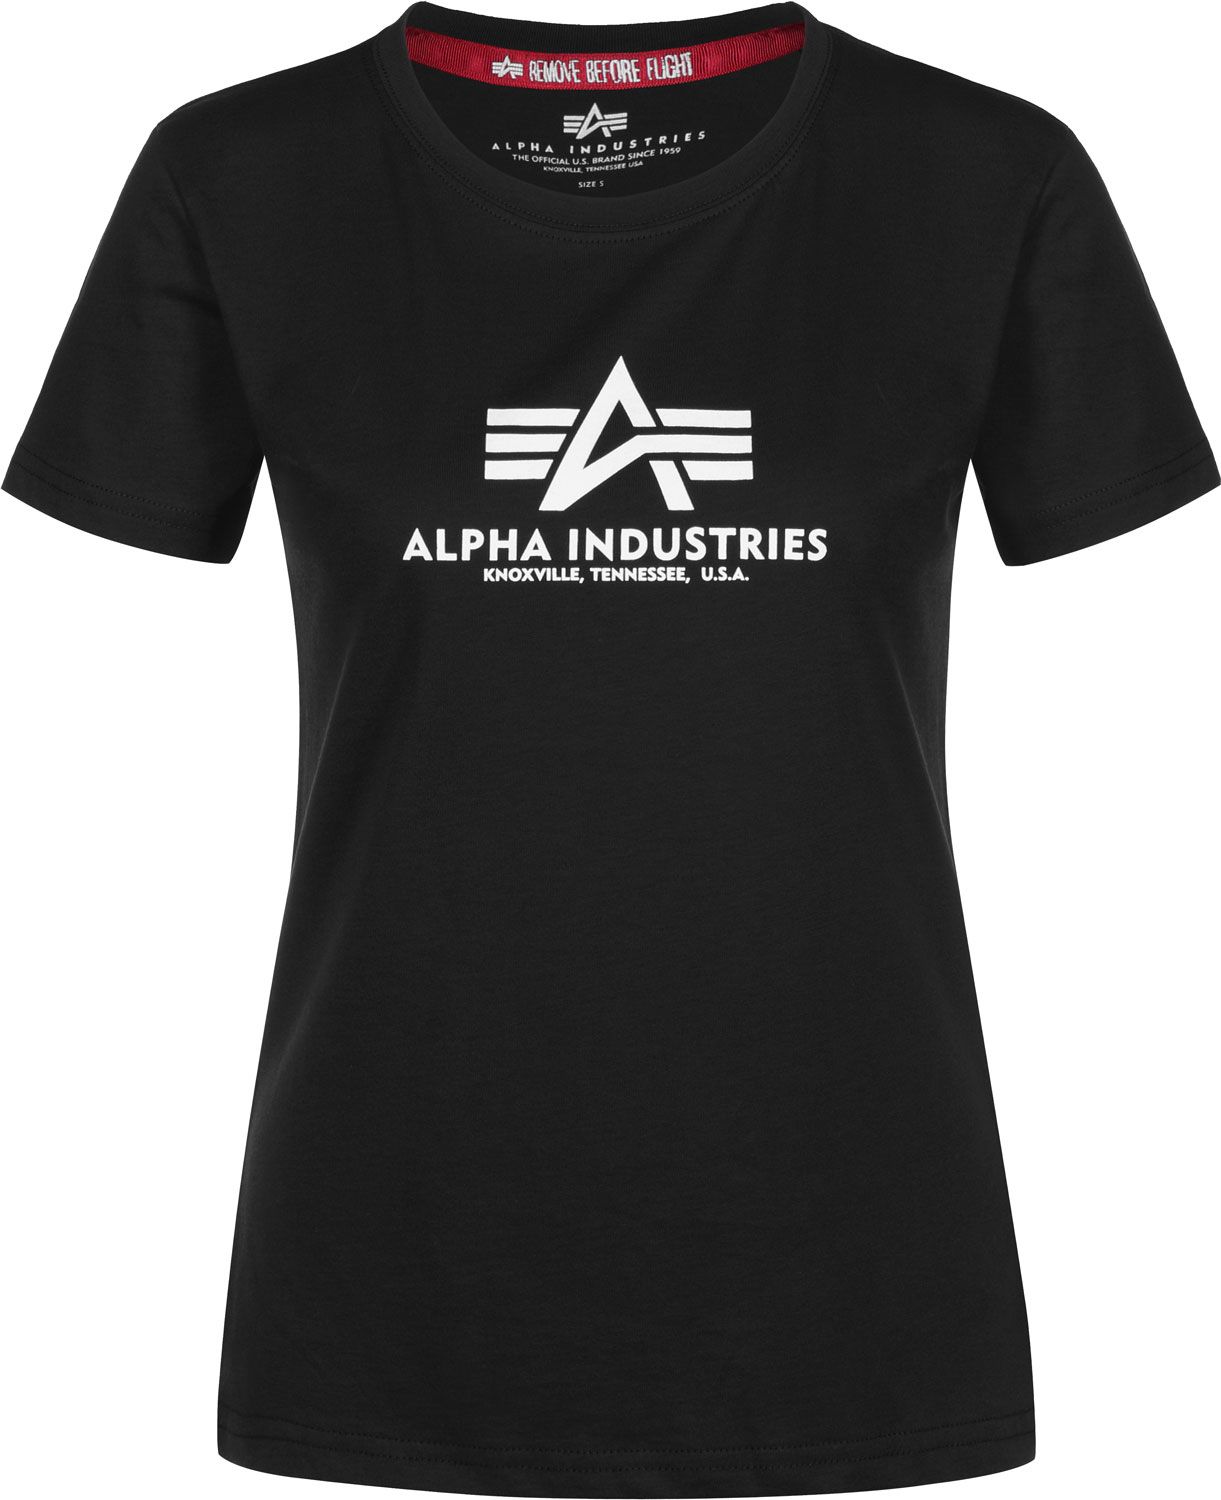 Alpha Industries dámské triko New Basic T (black)